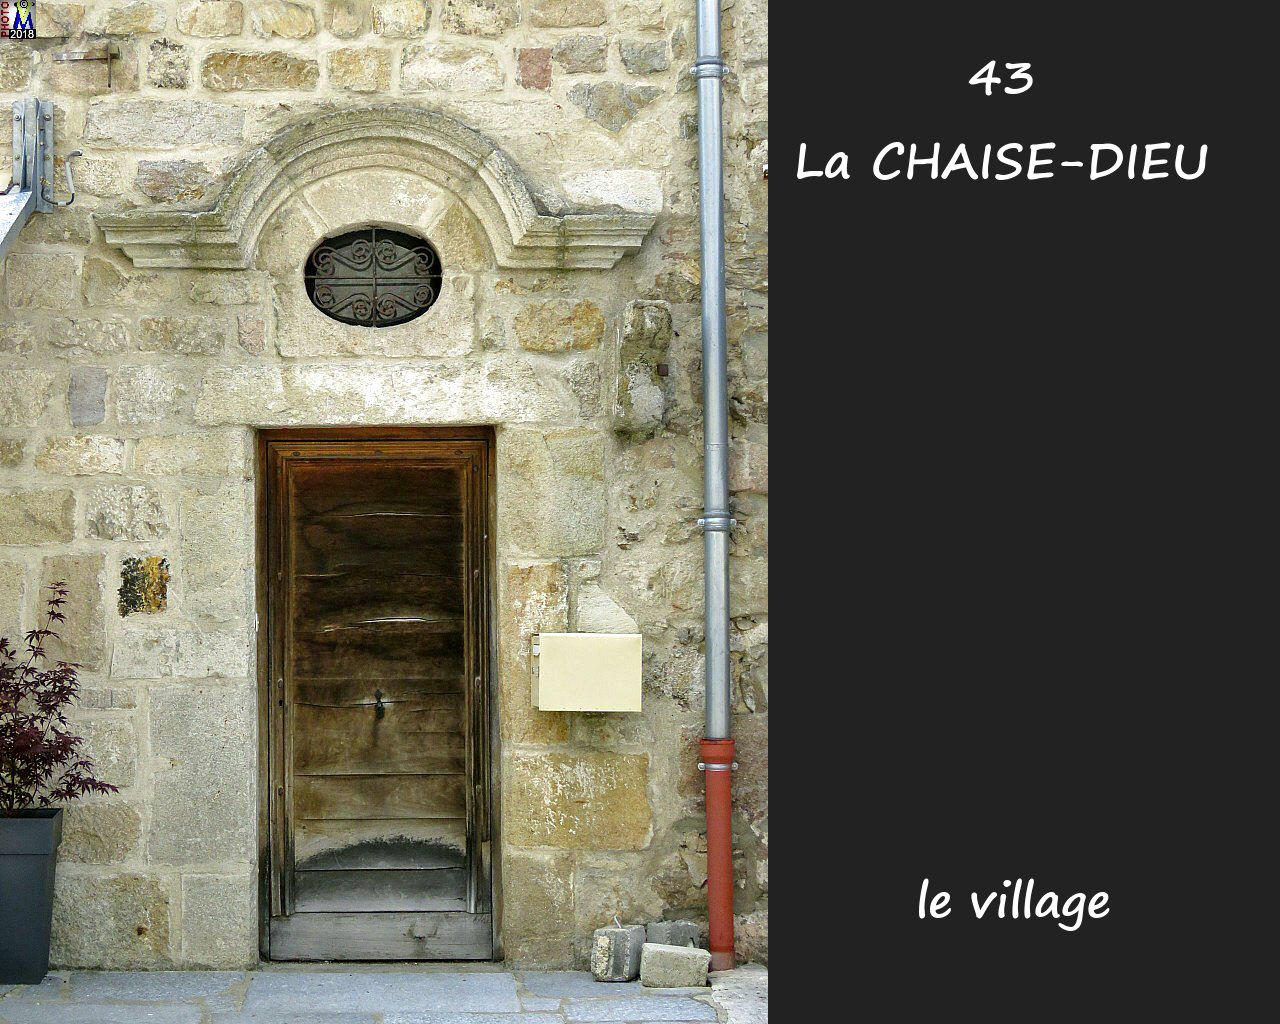 43CHAISE-DIEU_village_156.jpg